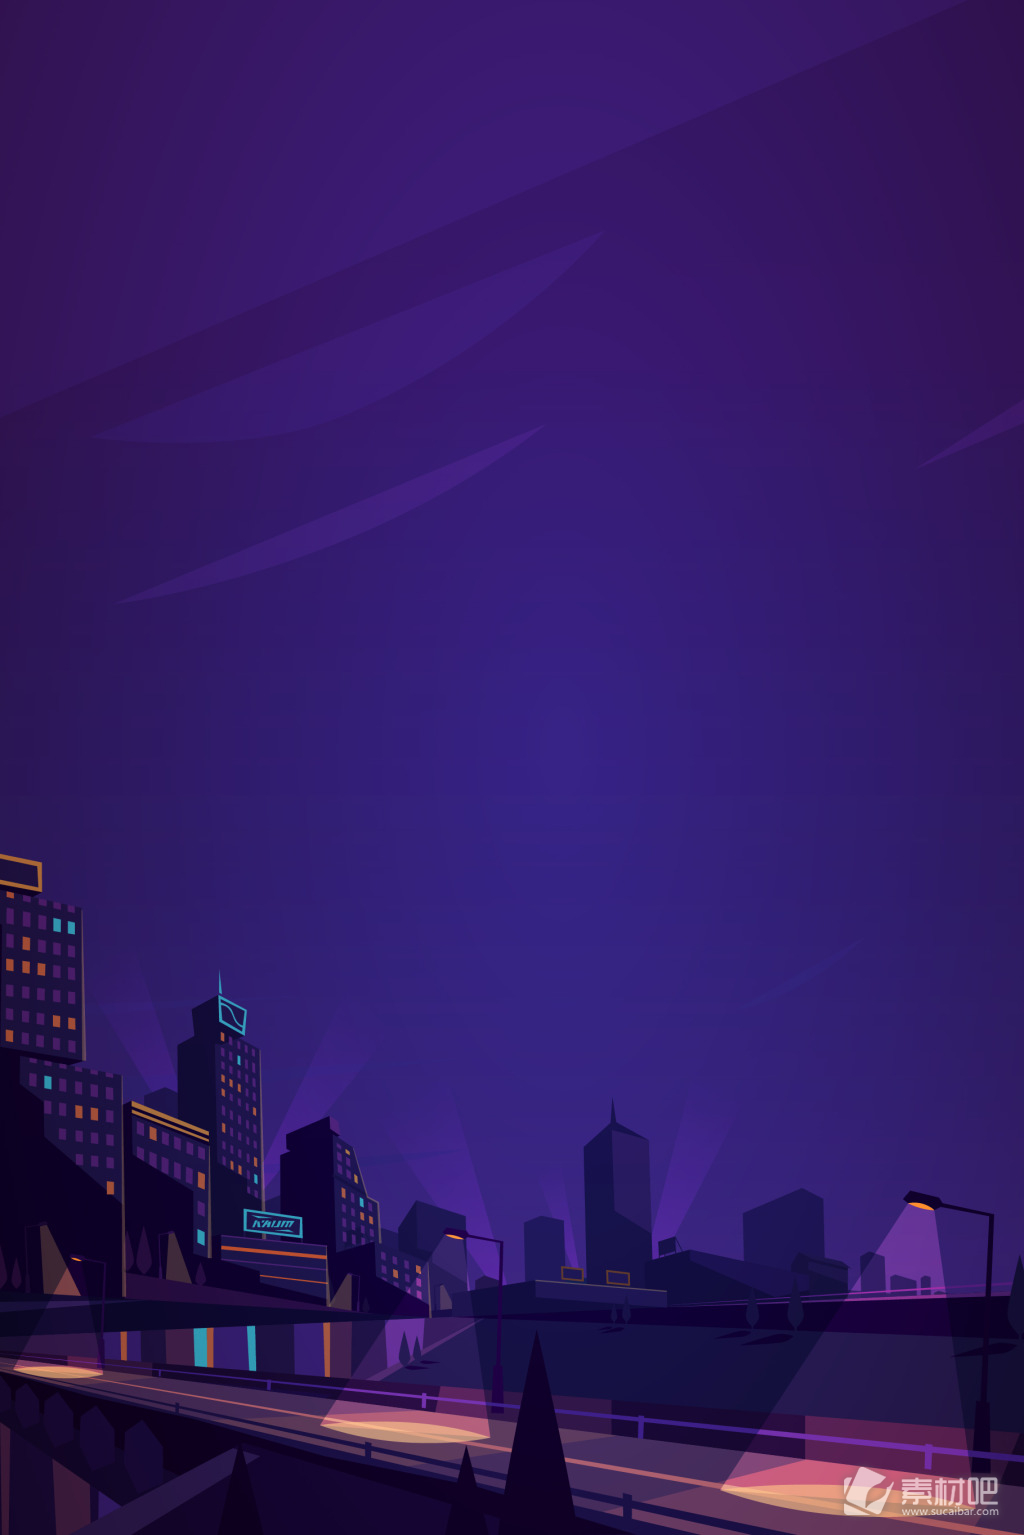 城市夜景矢量图 矢量卡通唯美城市夜景霓虹背景 素材吧